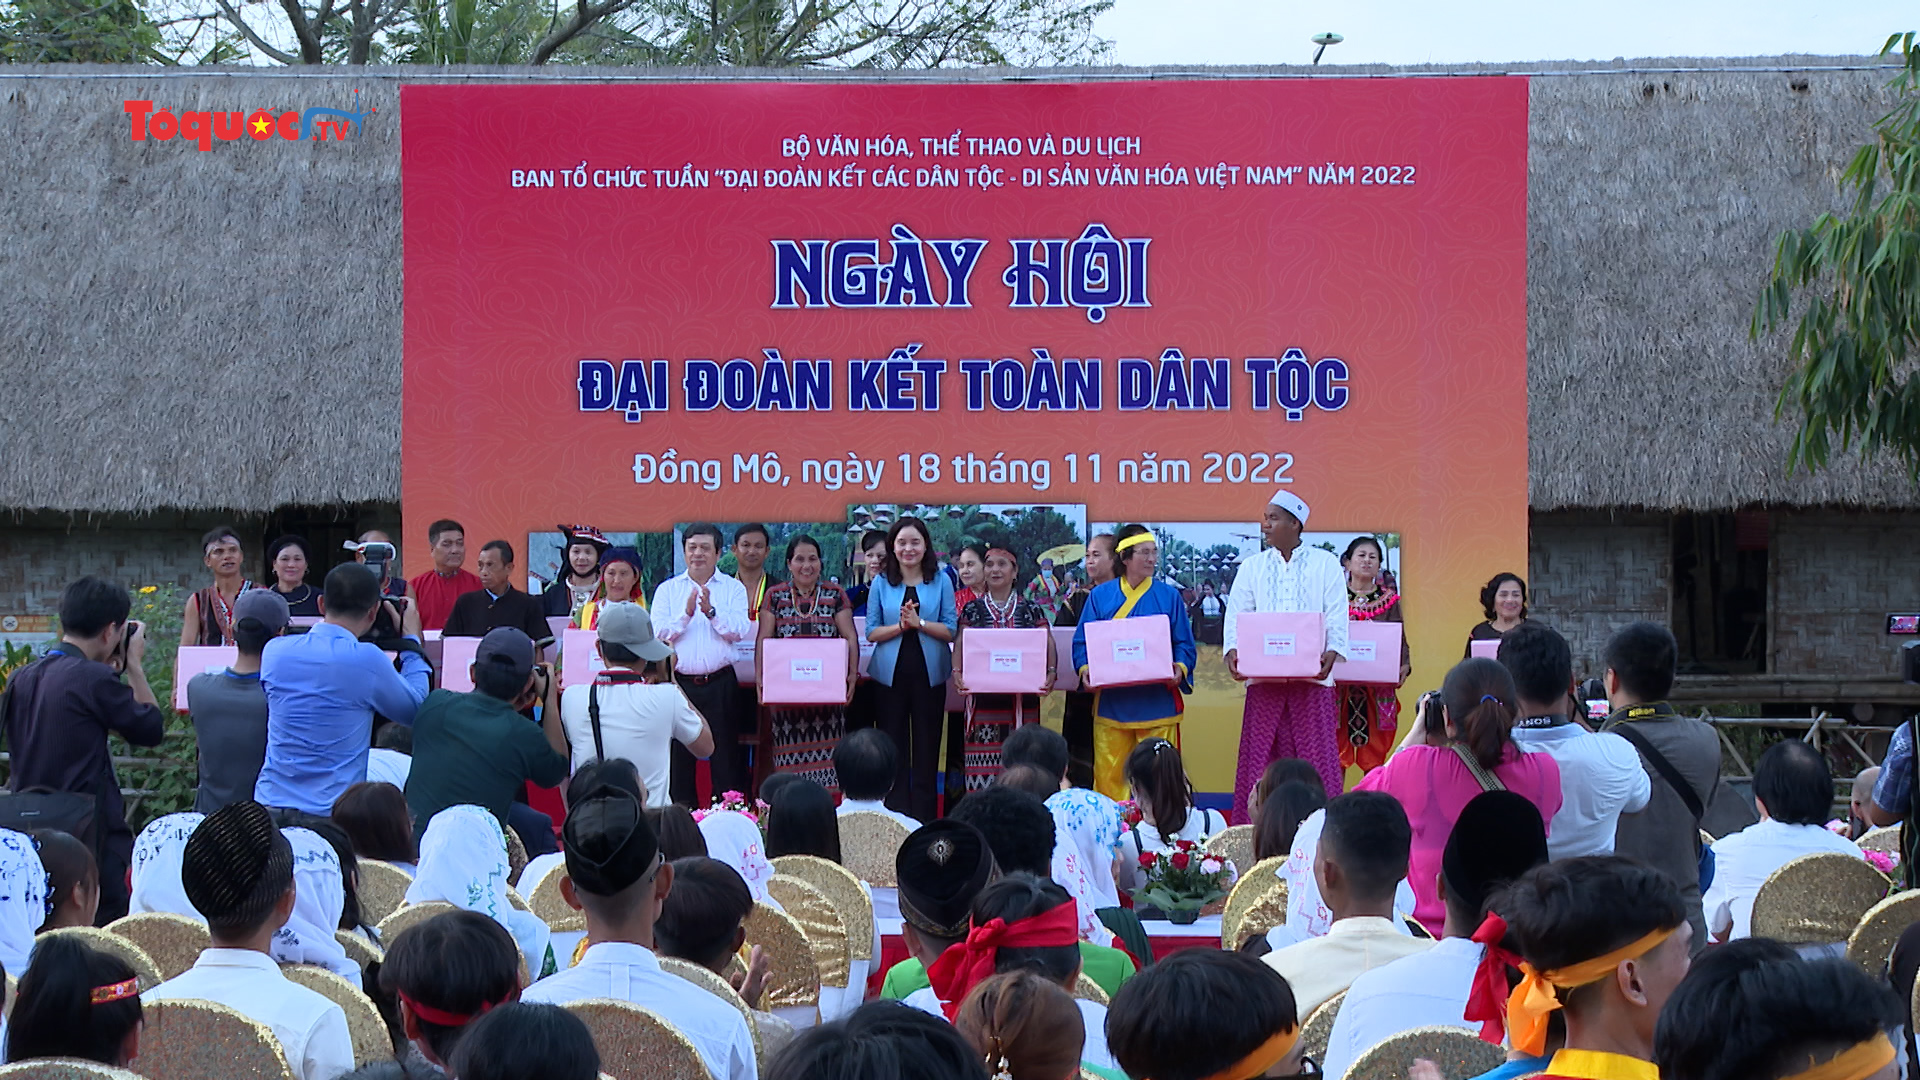 Ngày hội "Đại đoàn kết toàn dân tộc": Lan tỏa những âm thanh, sắc màu các dân tộc Việt Nam tới đông đảo du khách